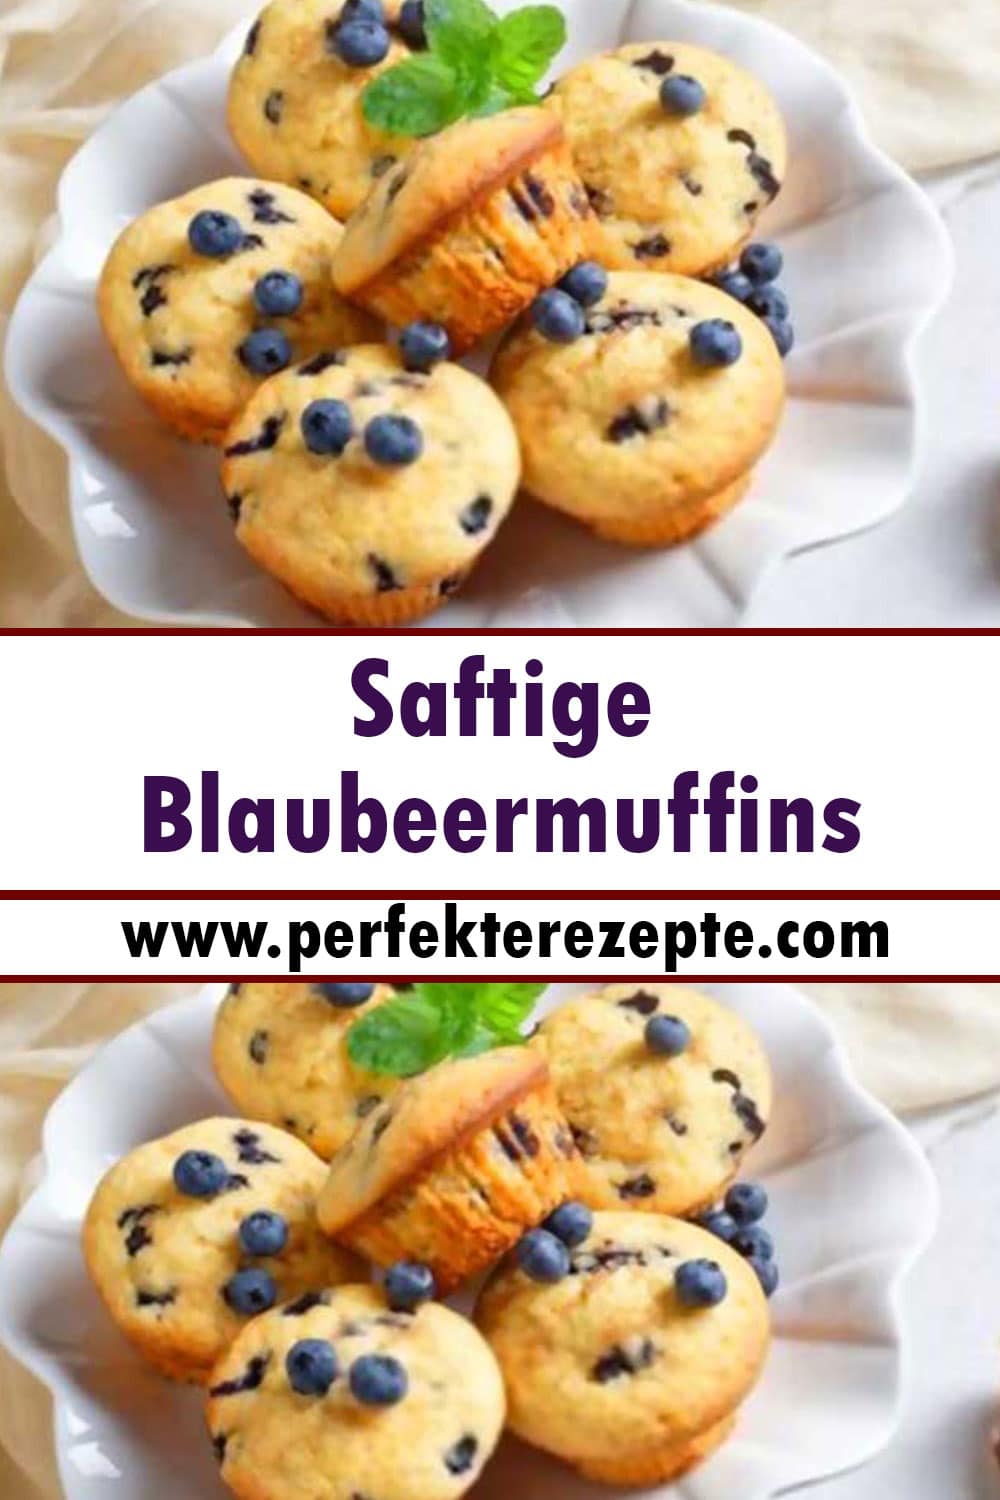 Saftige Blaubeermuffins Rezept